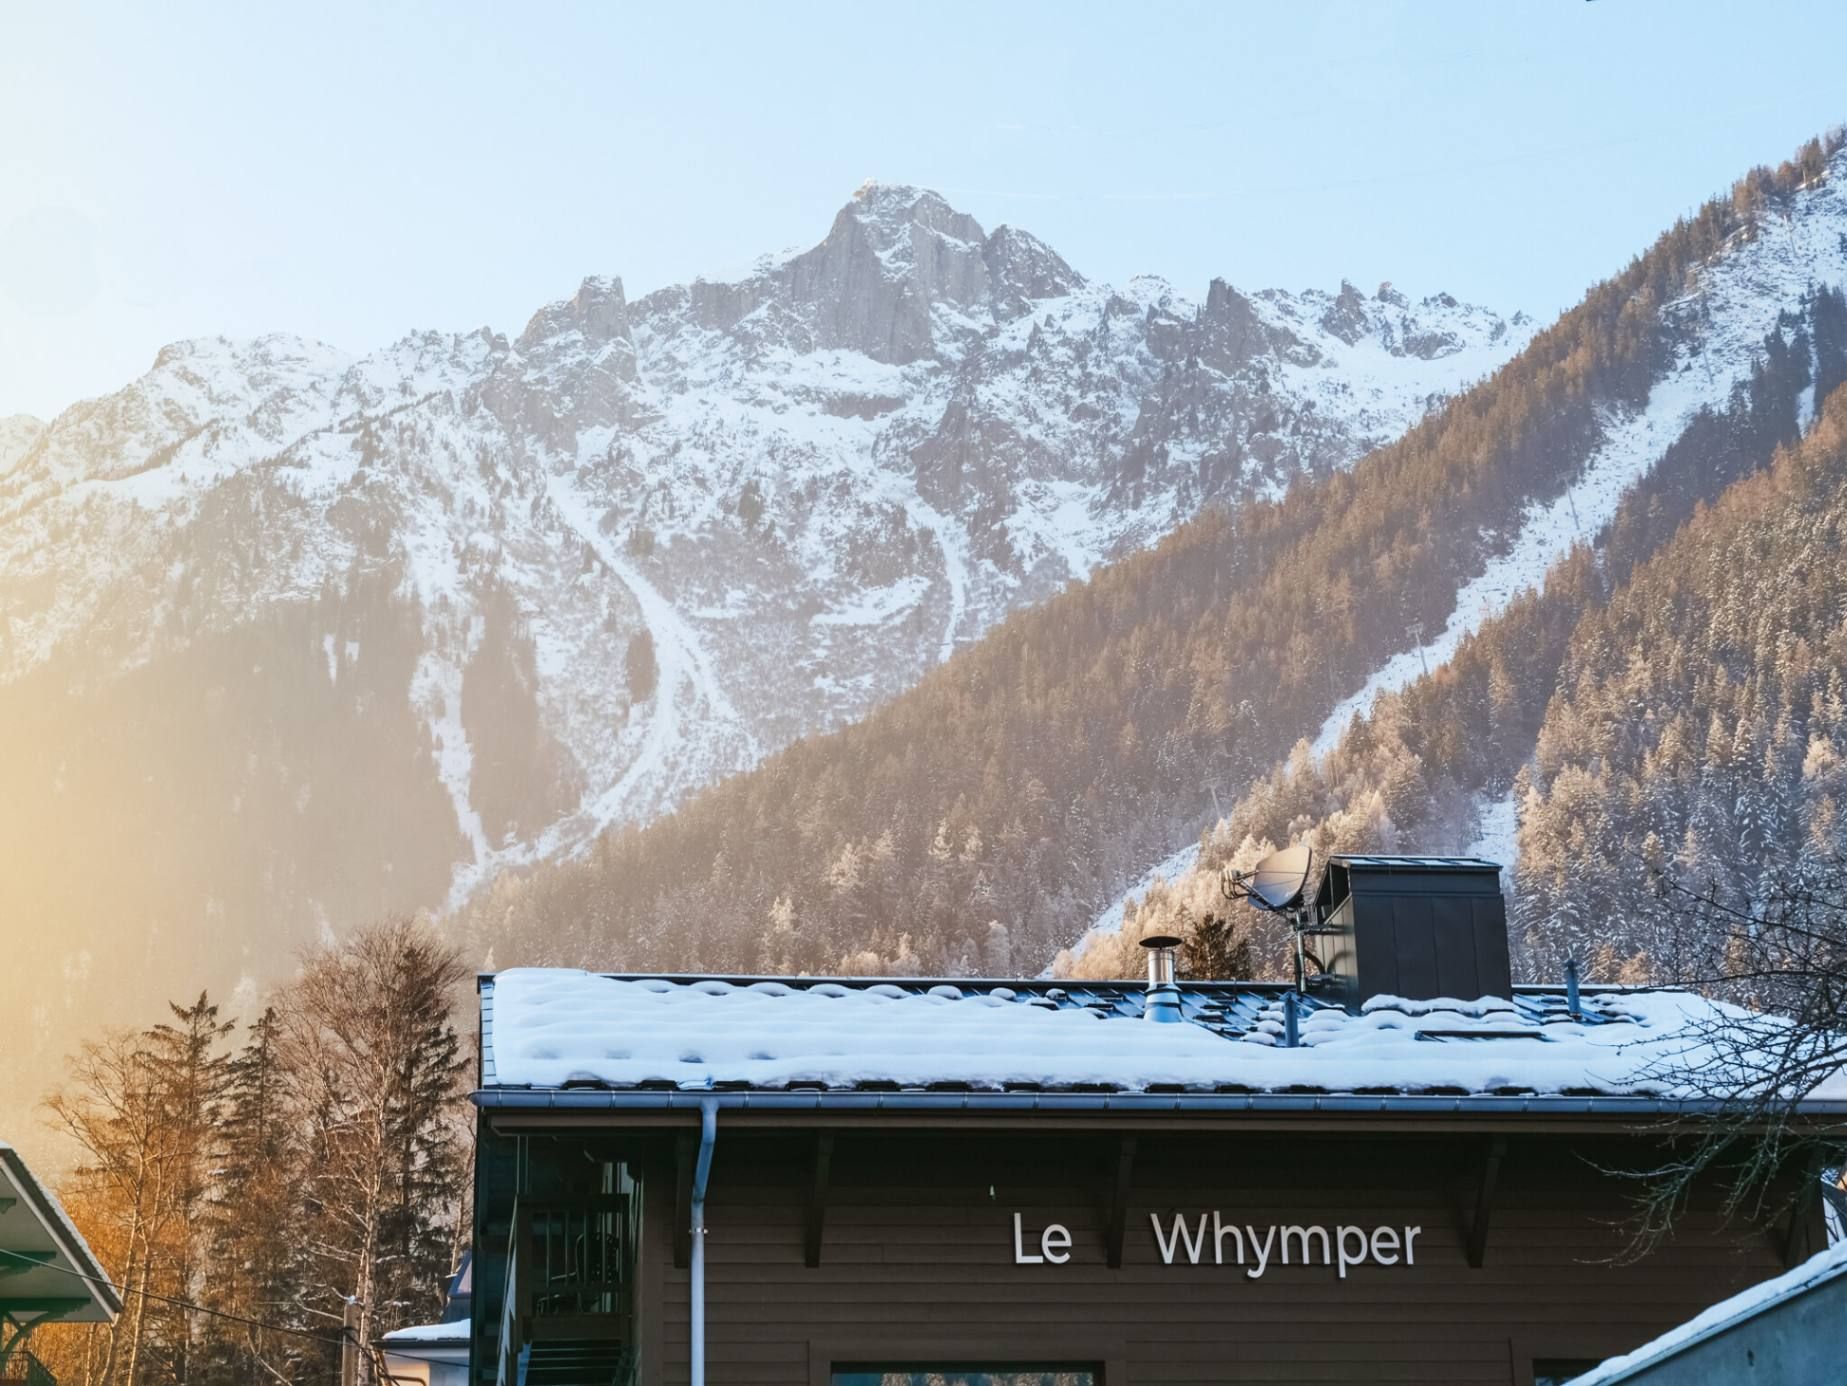 Chalet whymper à Chamonix avec les montagnes enneigées